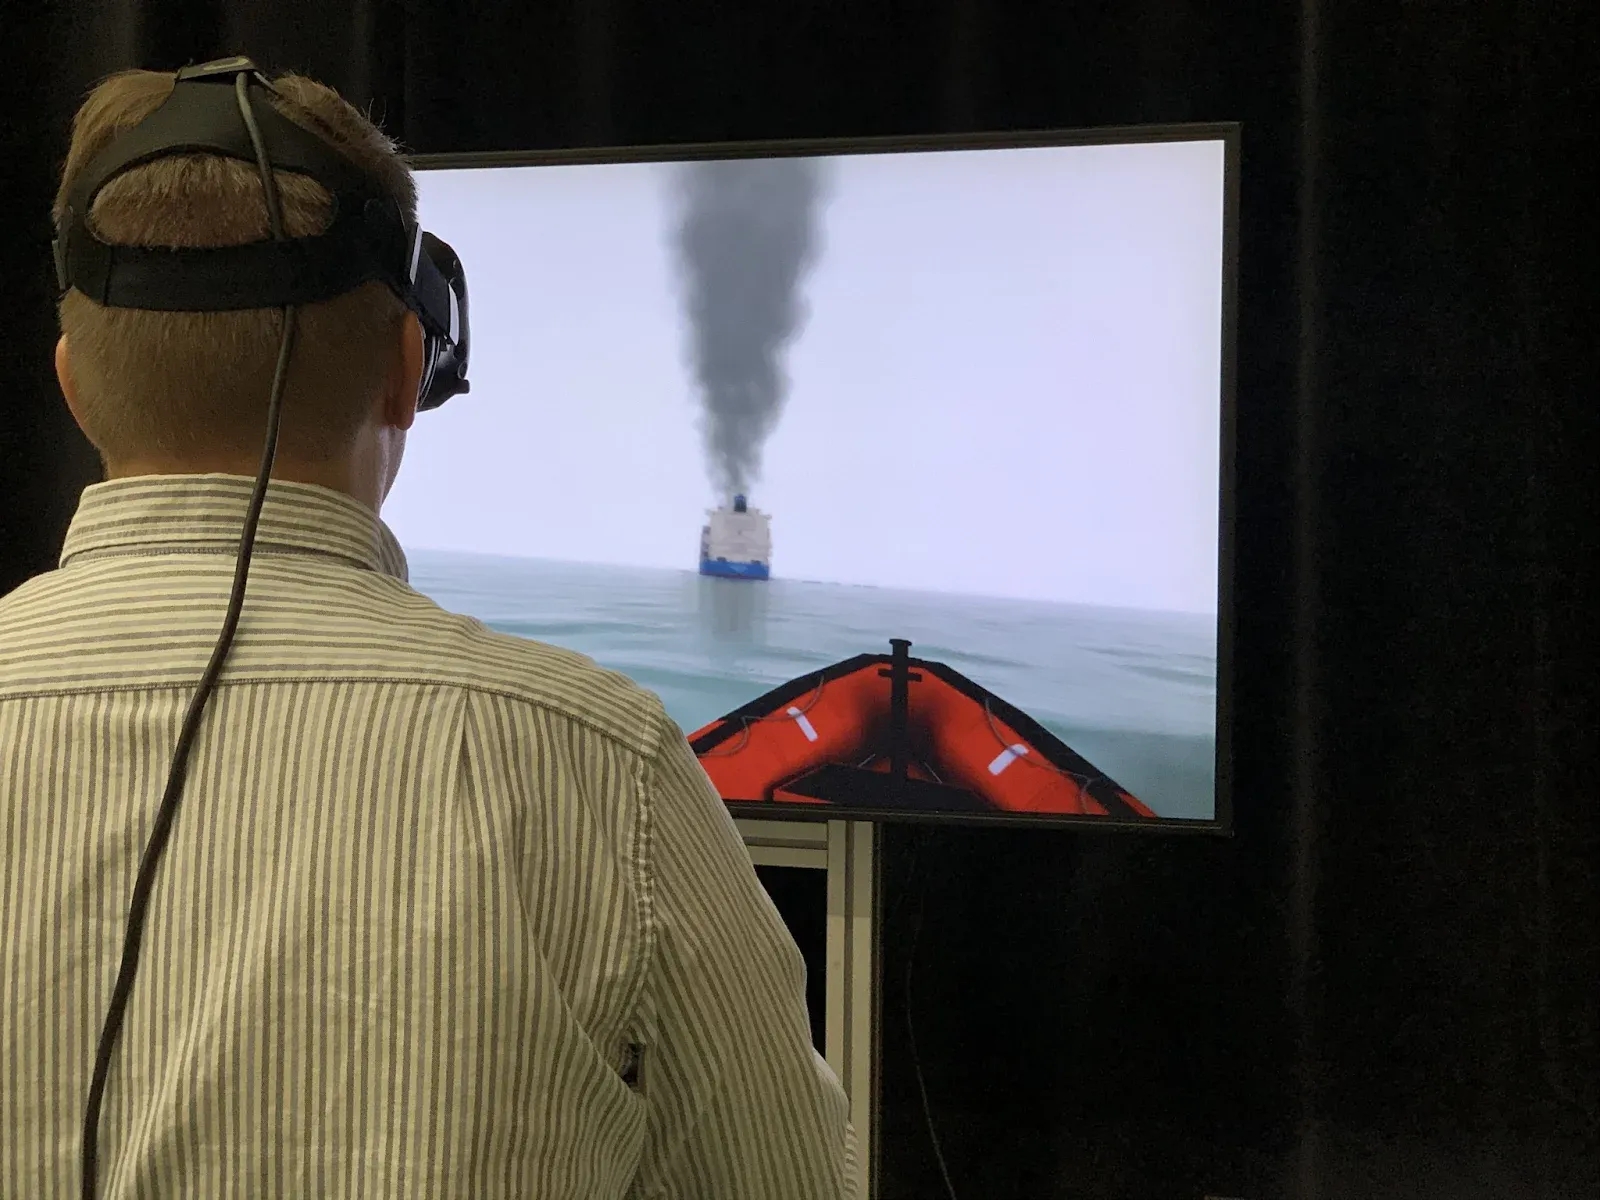 Simulator for rescue craft training